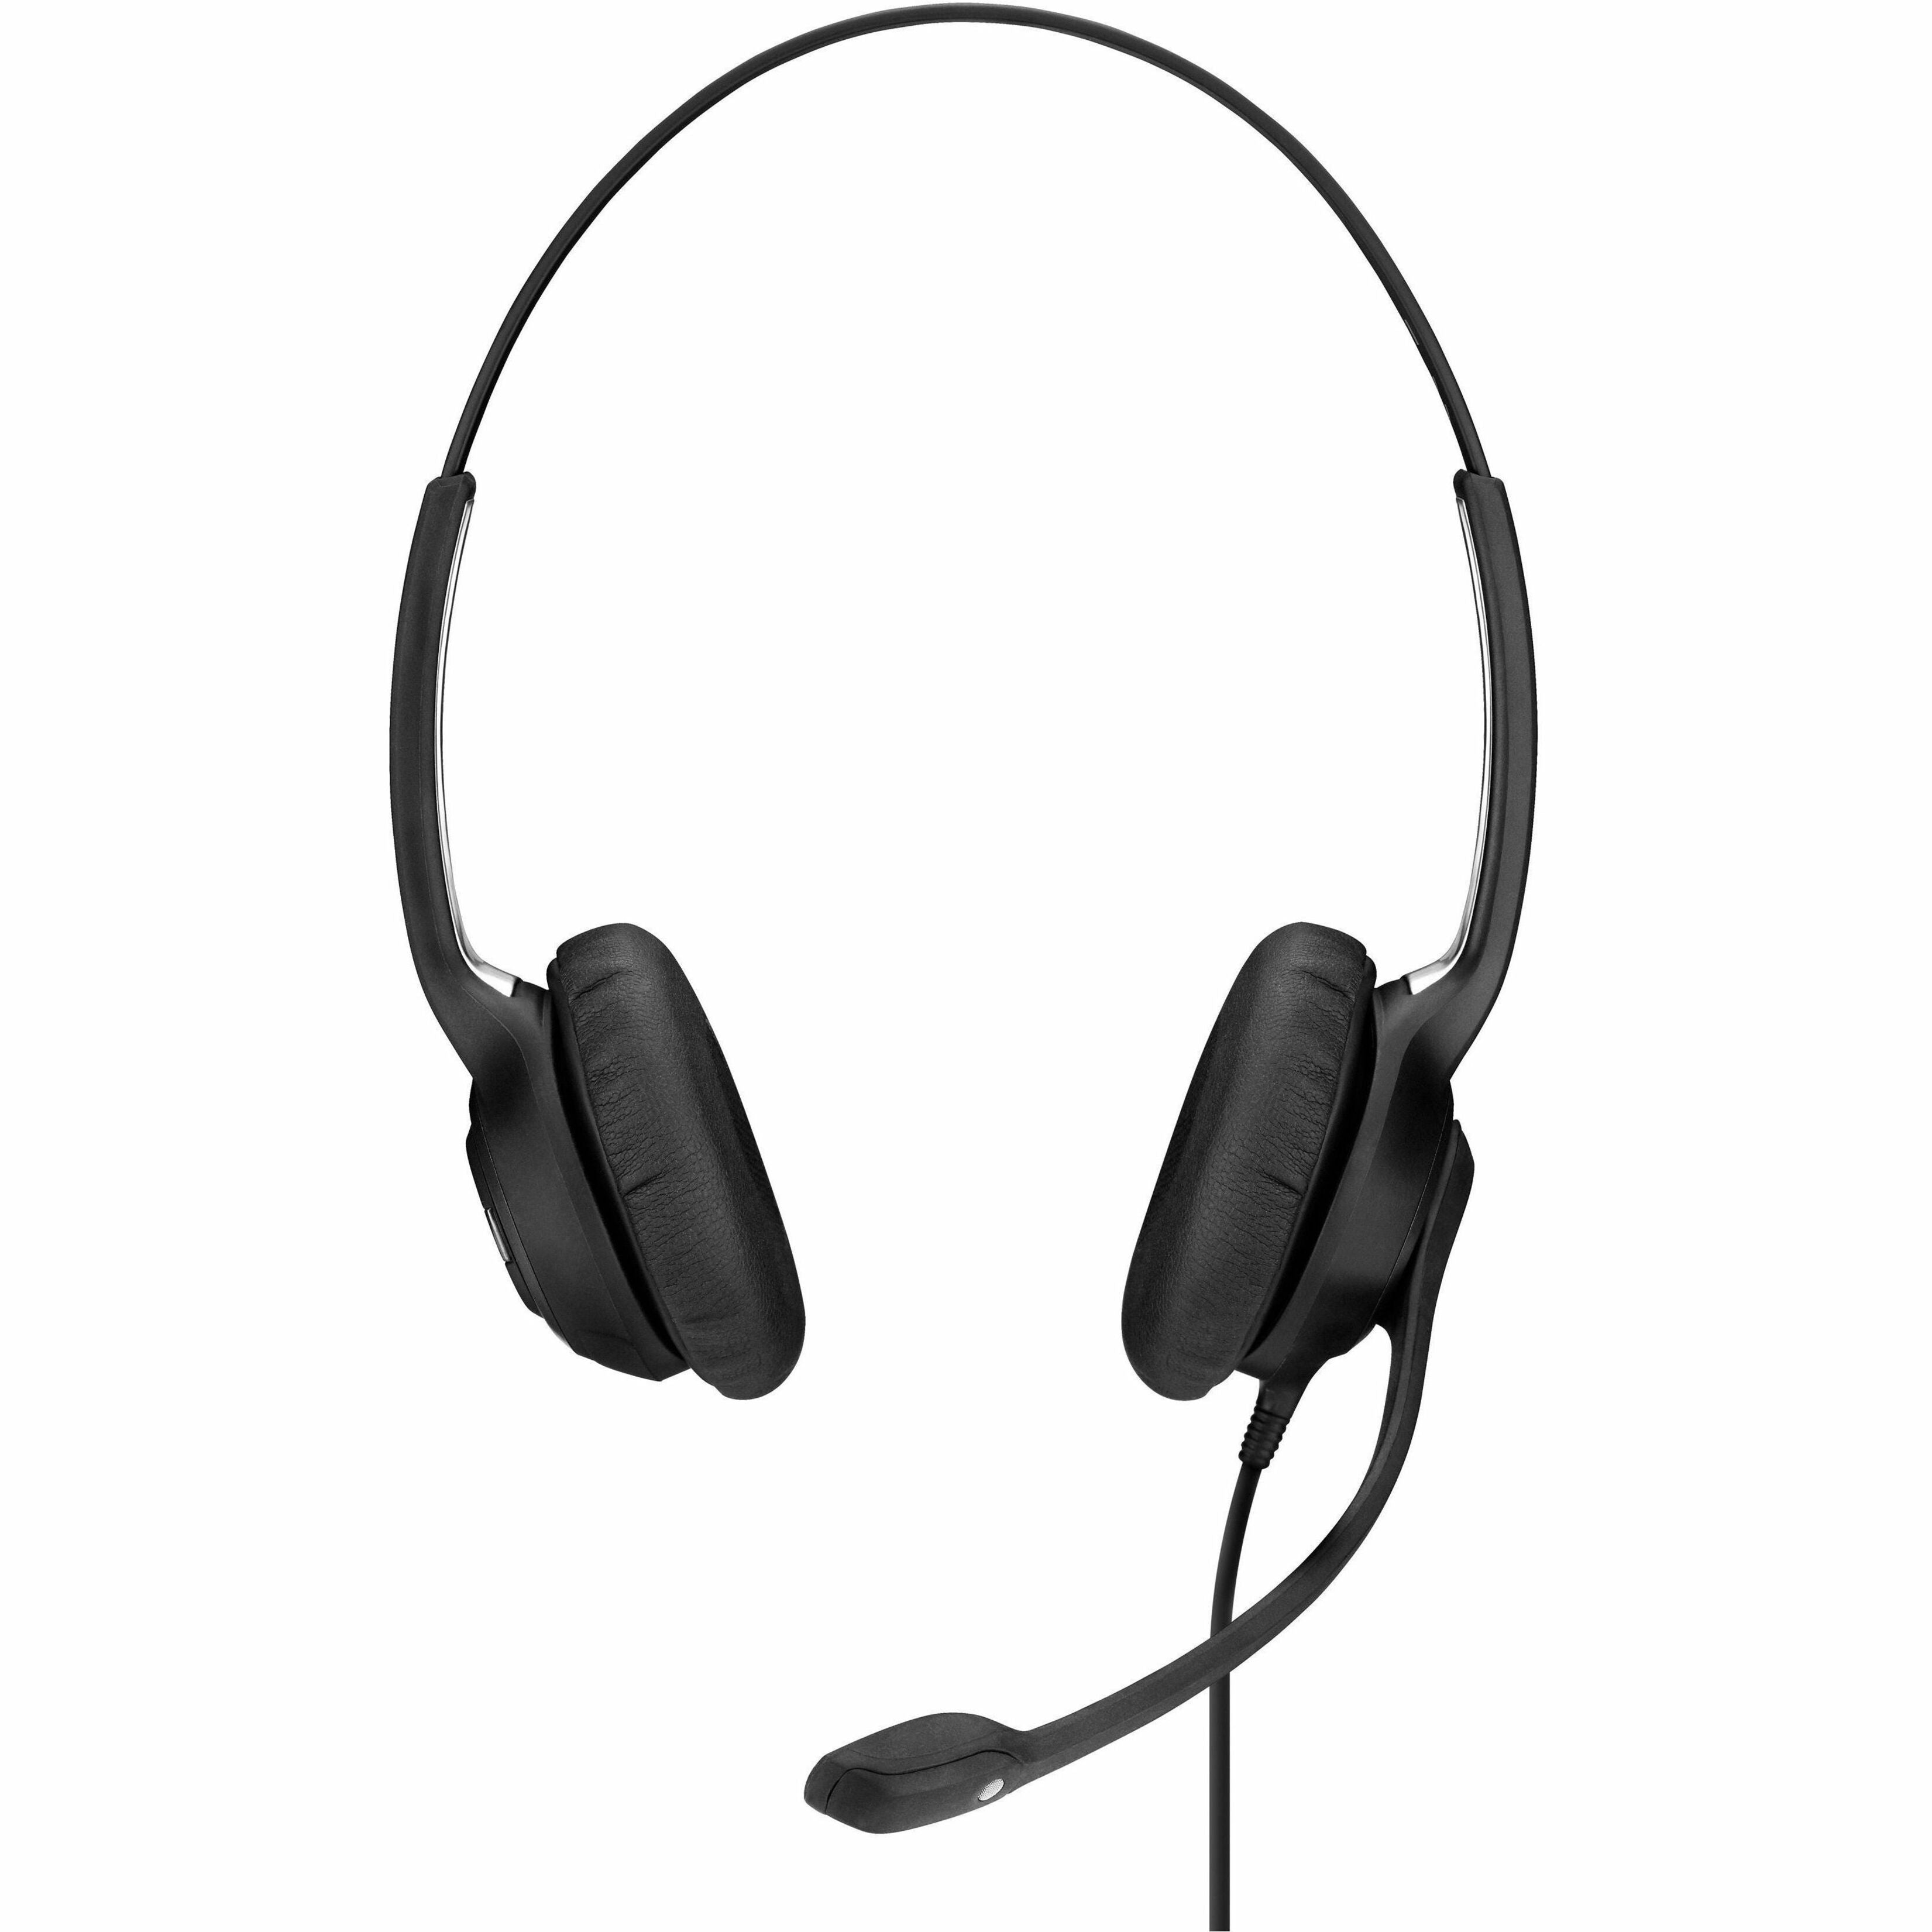 EPOS | SENNHEISER IMPACT SC 260 On-ear Binaural Headset [Discontinued]